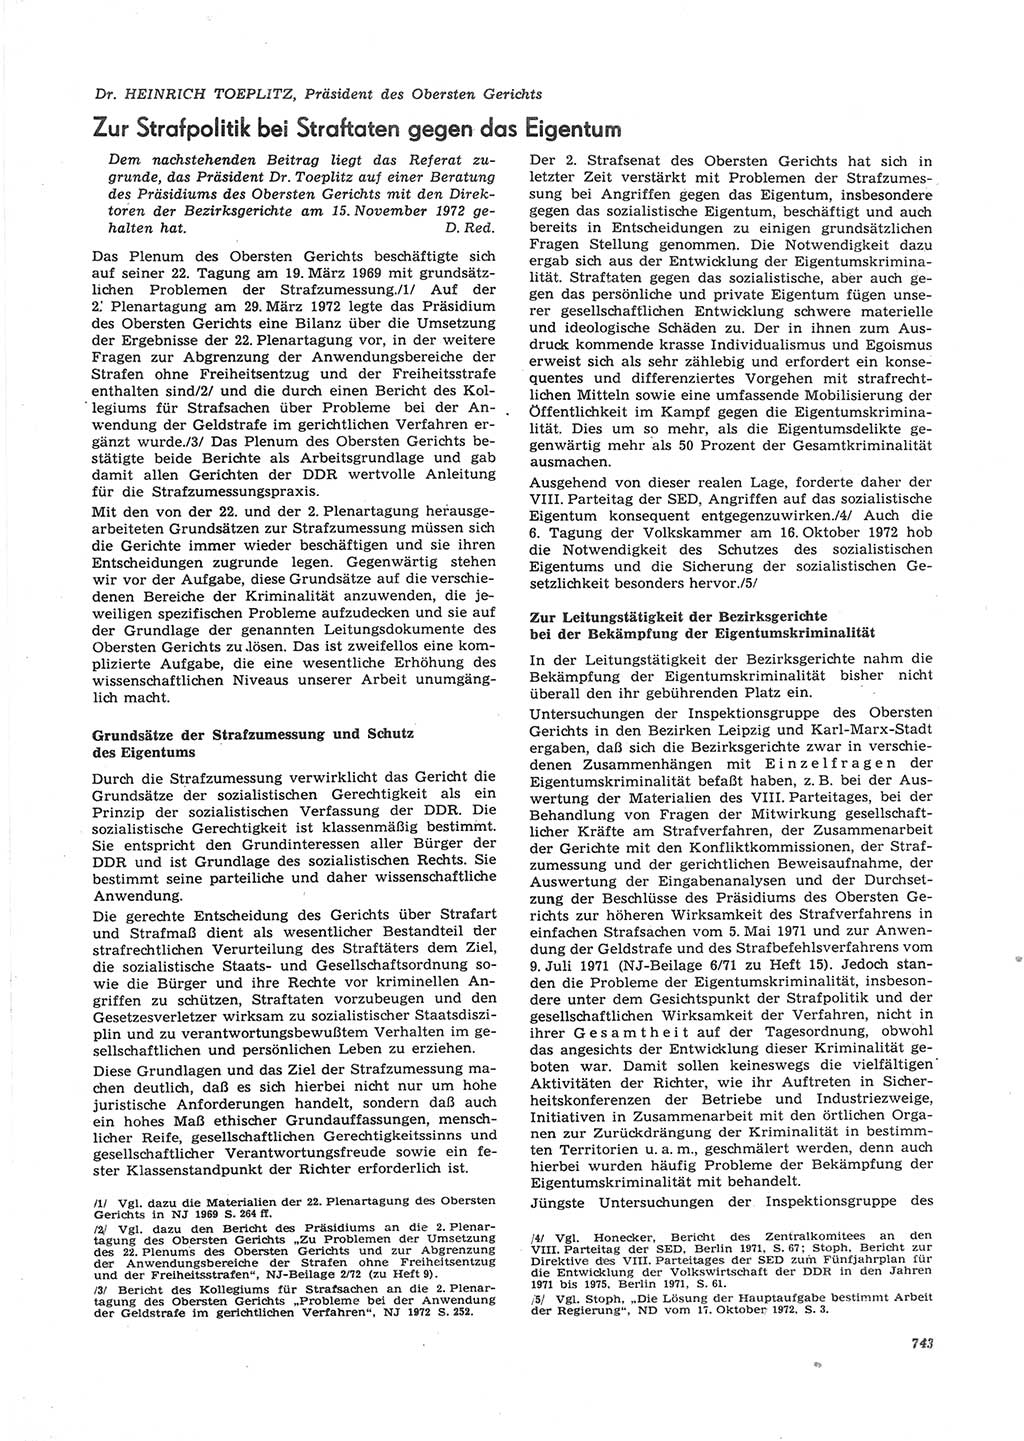 Neue Justiz (NJ), Zeitschrift für Recht und Rechtswissenschaft [Deutsche Demokratische Republik (DDR)], 26. Jahrgang 1972, Seite 743 (NJ DDR 1972, S. 743)